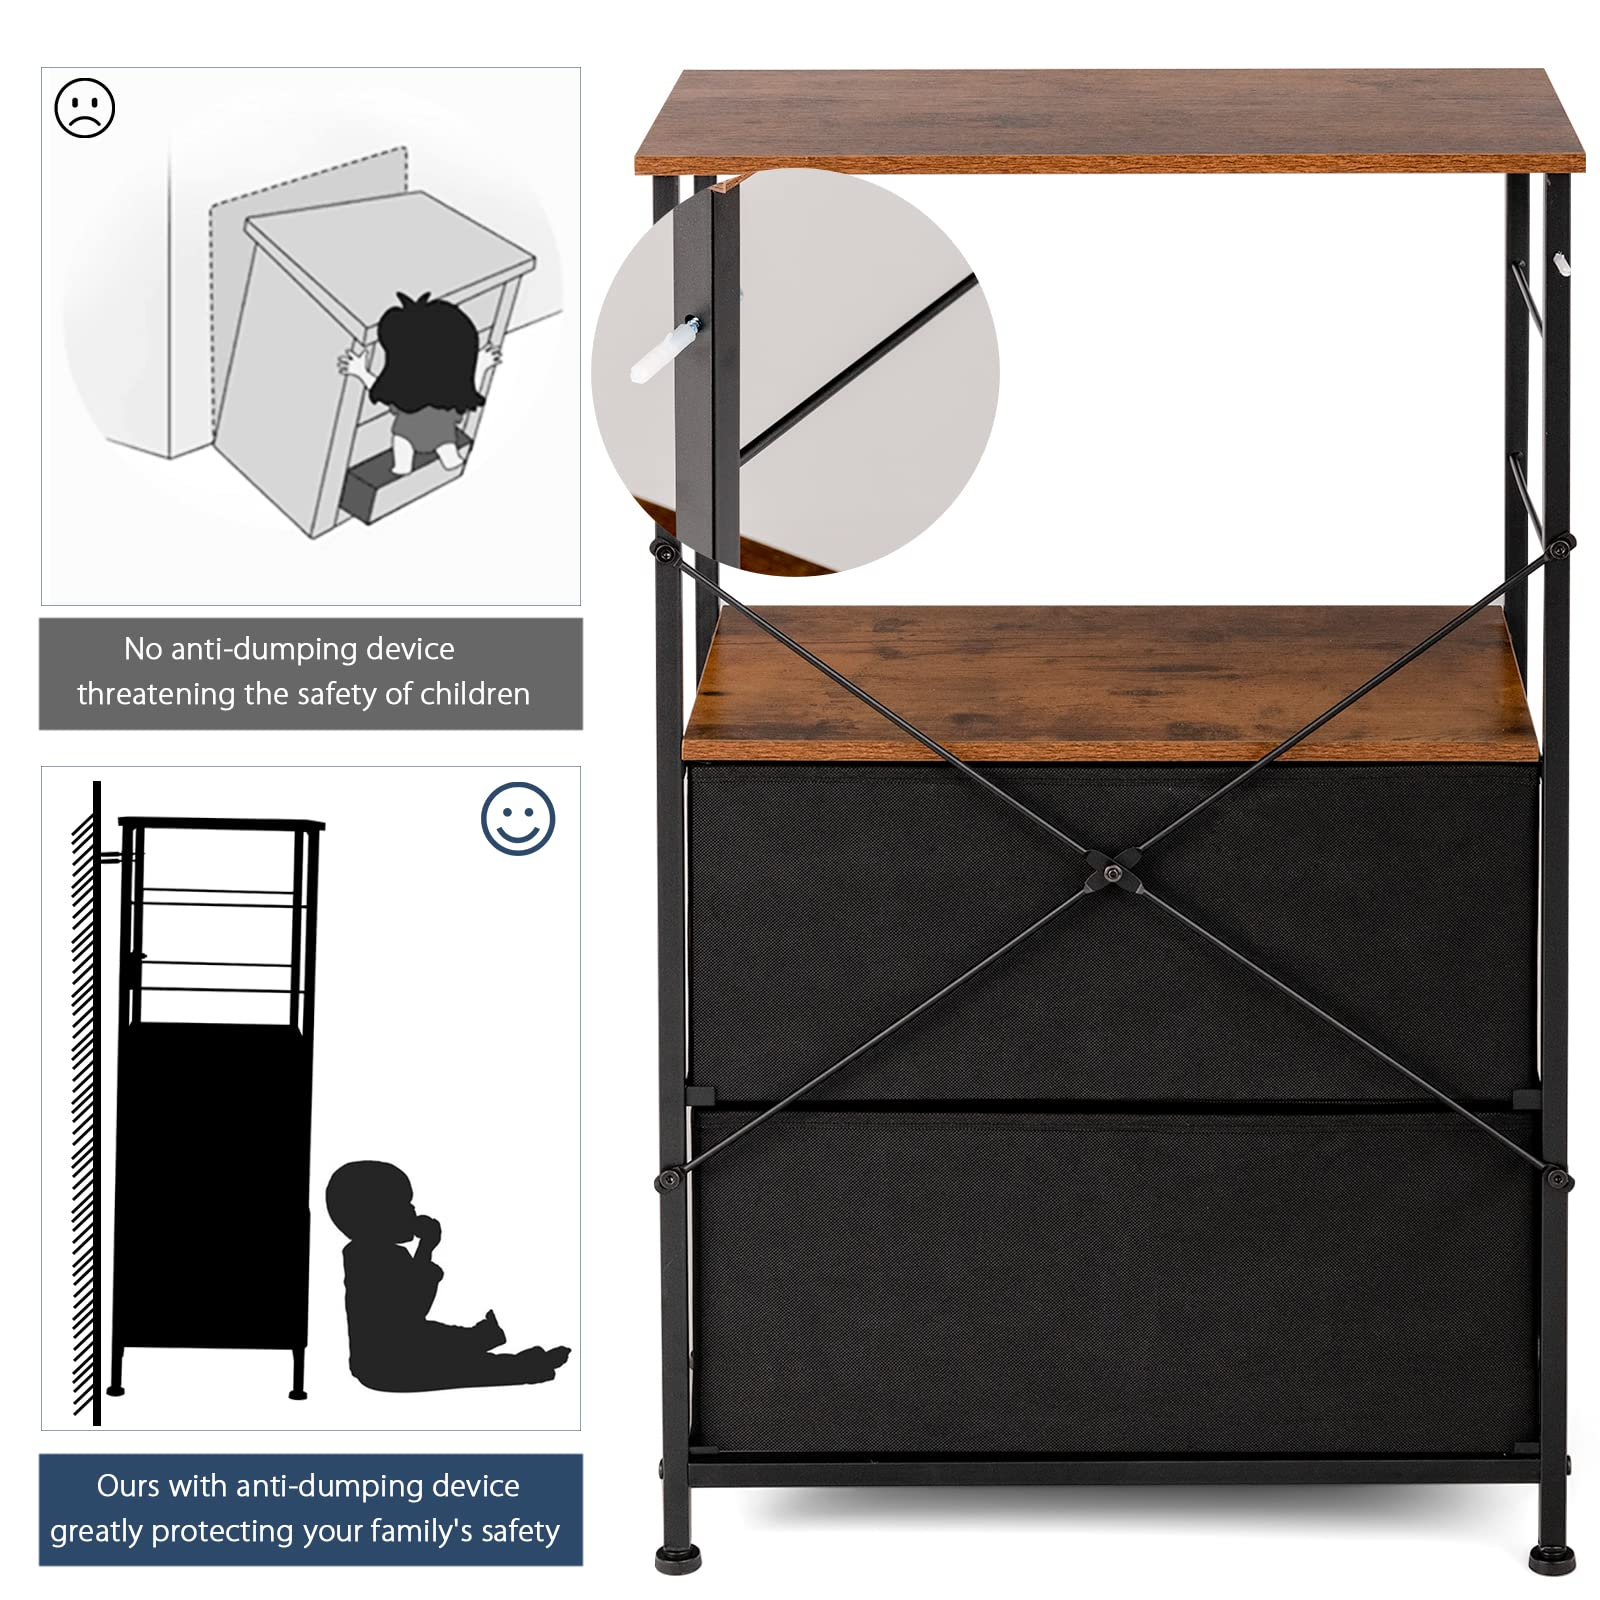 Giantex 2 Drawer Dresser Bedside Table with Storage Shelf, Wooden Top, Metal Frame